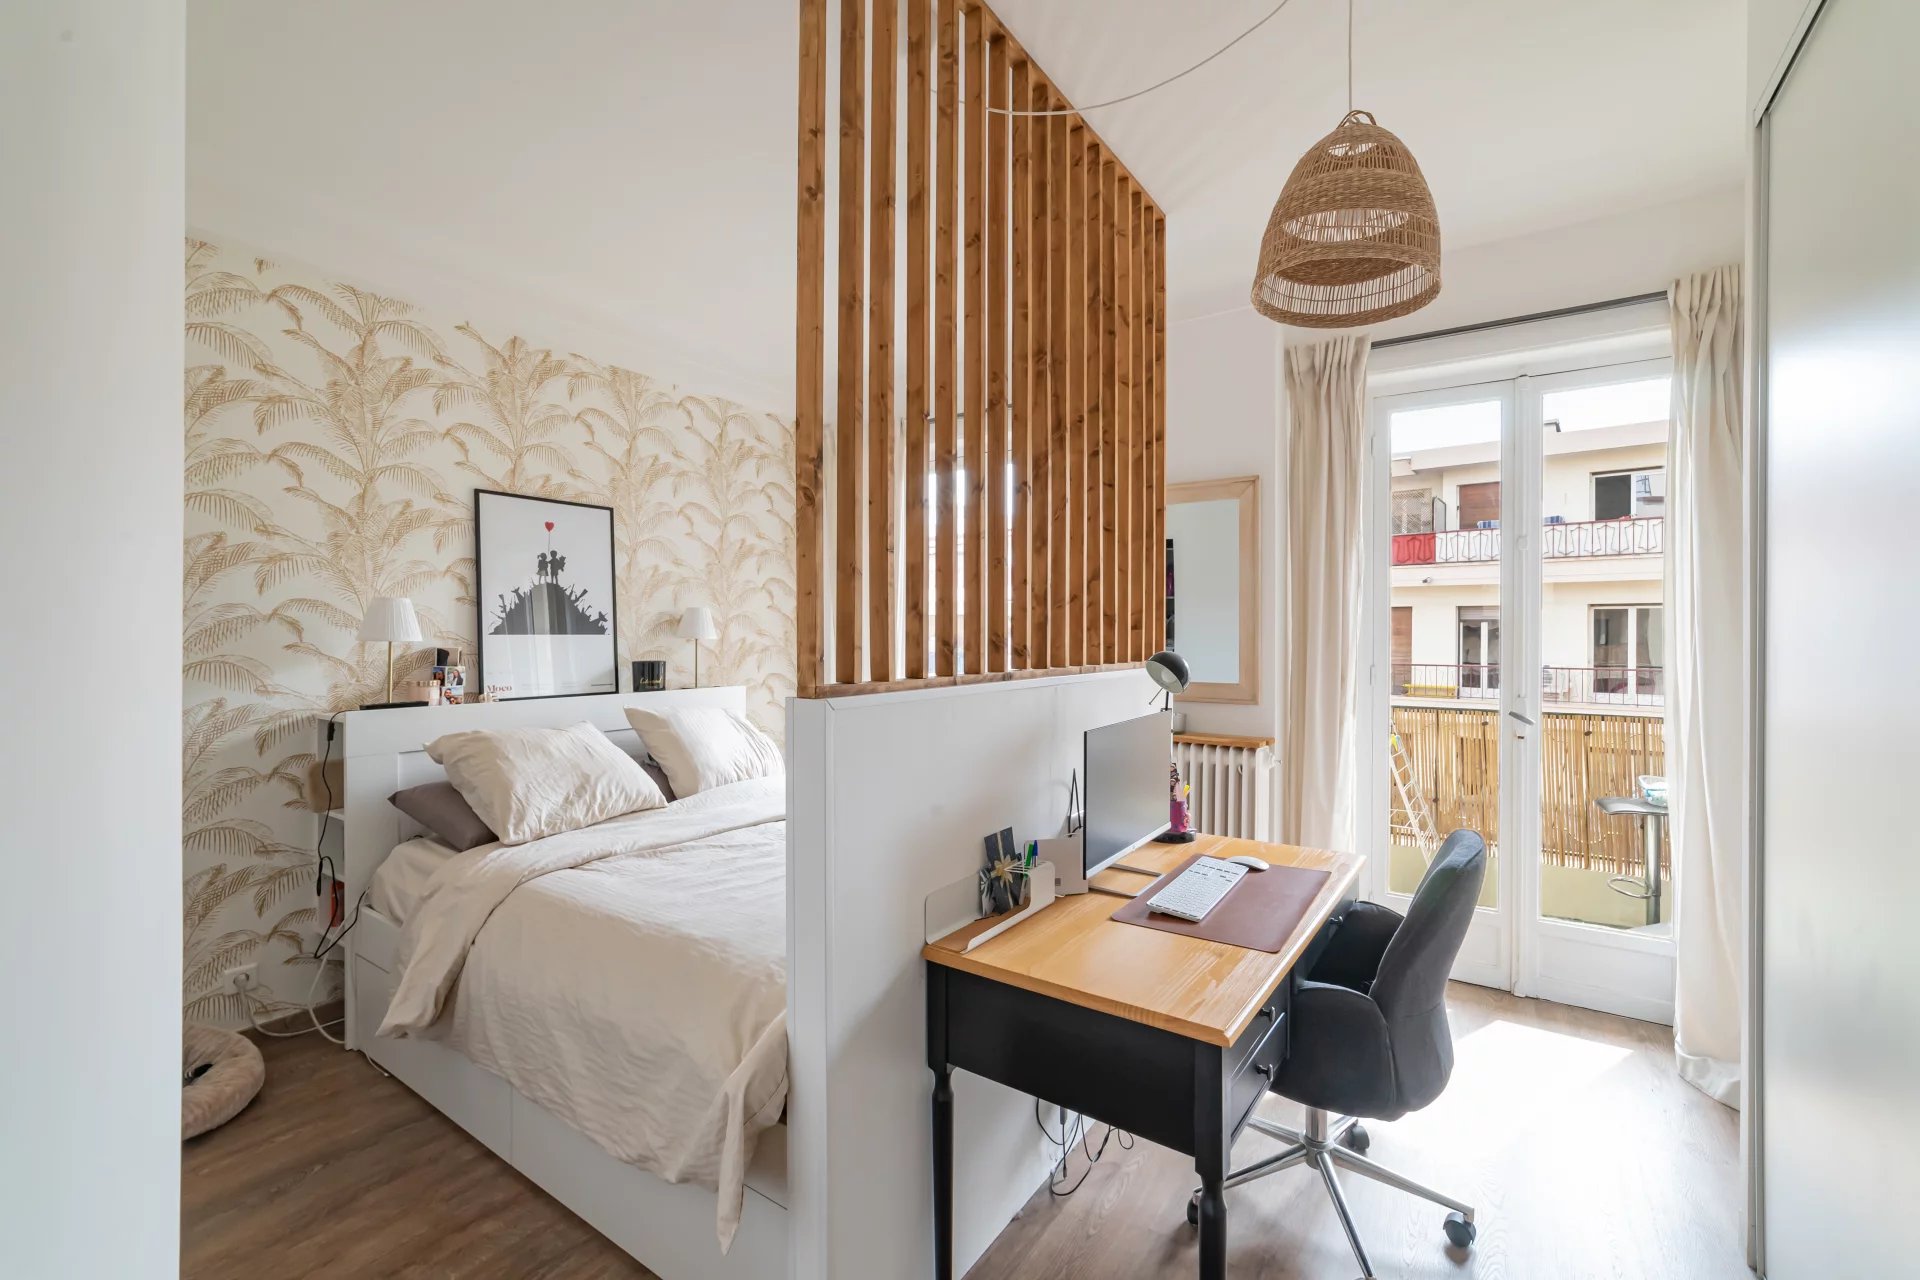 1 bedroom / Penultimate floor / Balconies